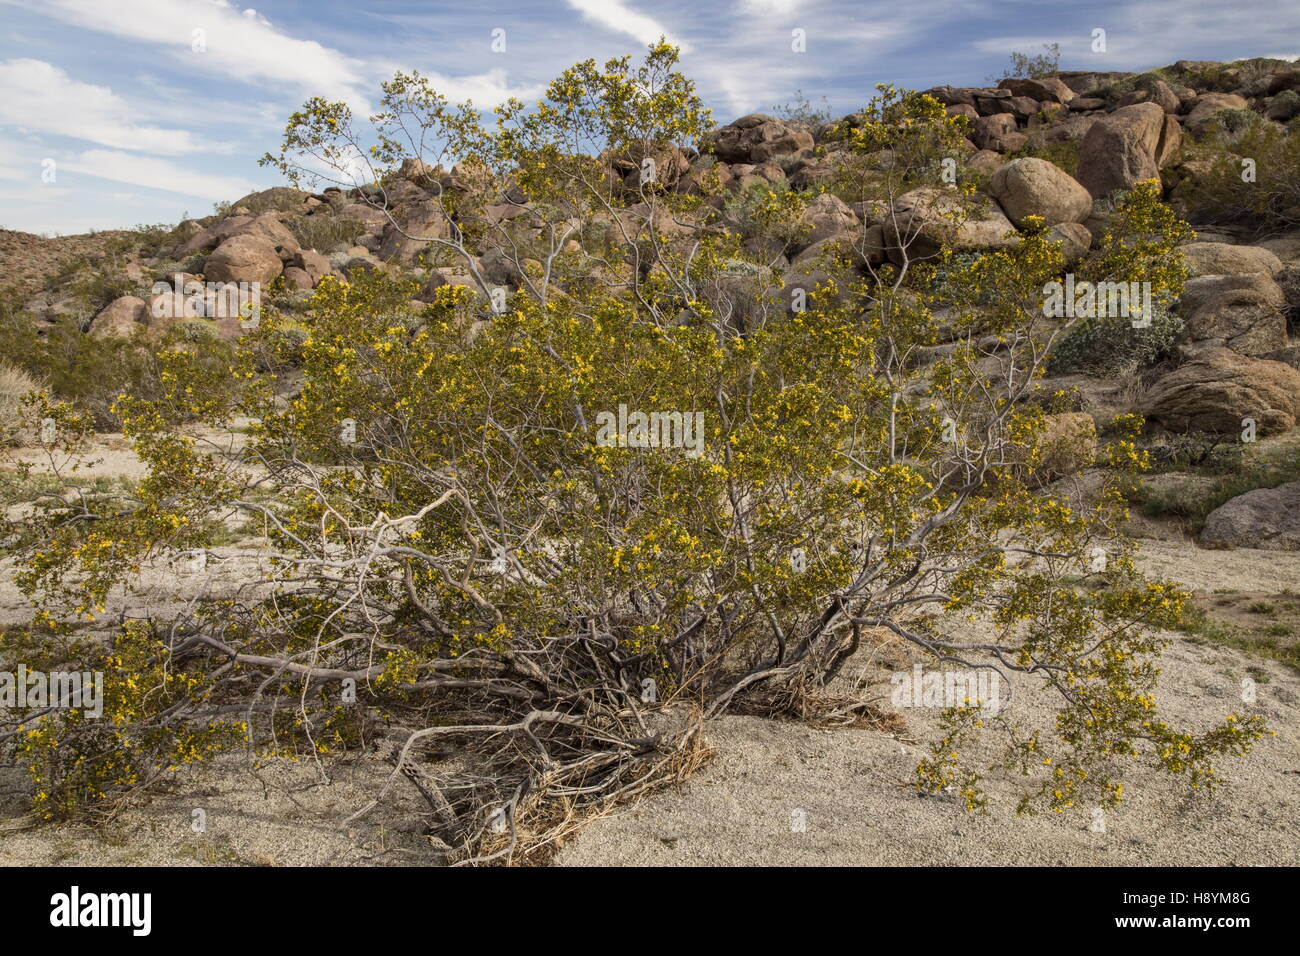 Il creosoto bush, Larrea purshia in fiore nel deserto californiano. Anza-Borrego Desert State Park, Deserto Sonoran, California Foto Stock